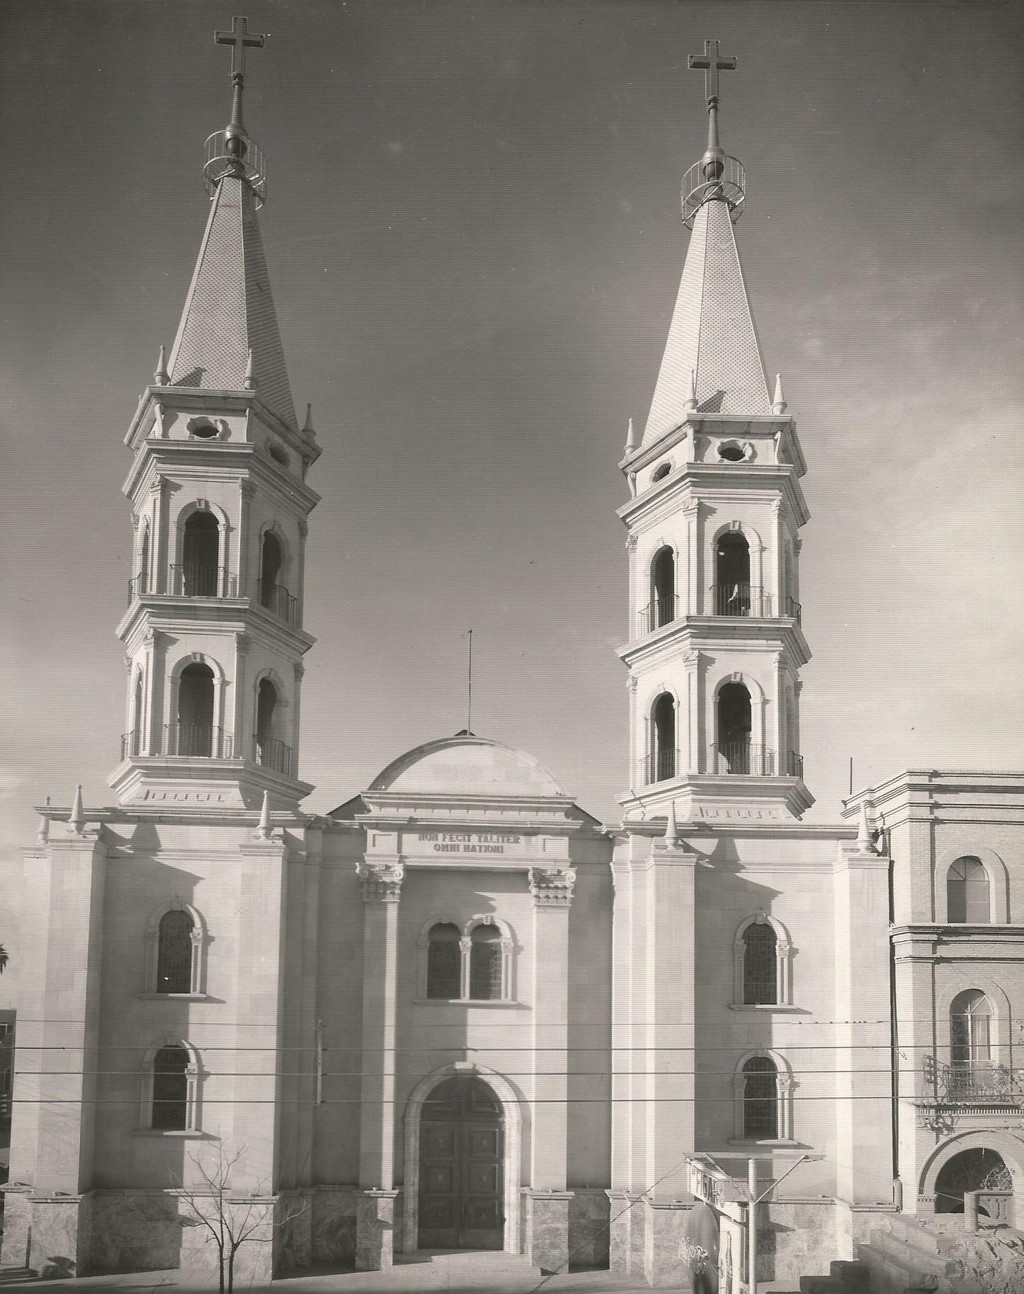 La parraoquia ha sido testigo de numerosos incidentes destacados en la historia de Torreón como la Revolución Mexicana.